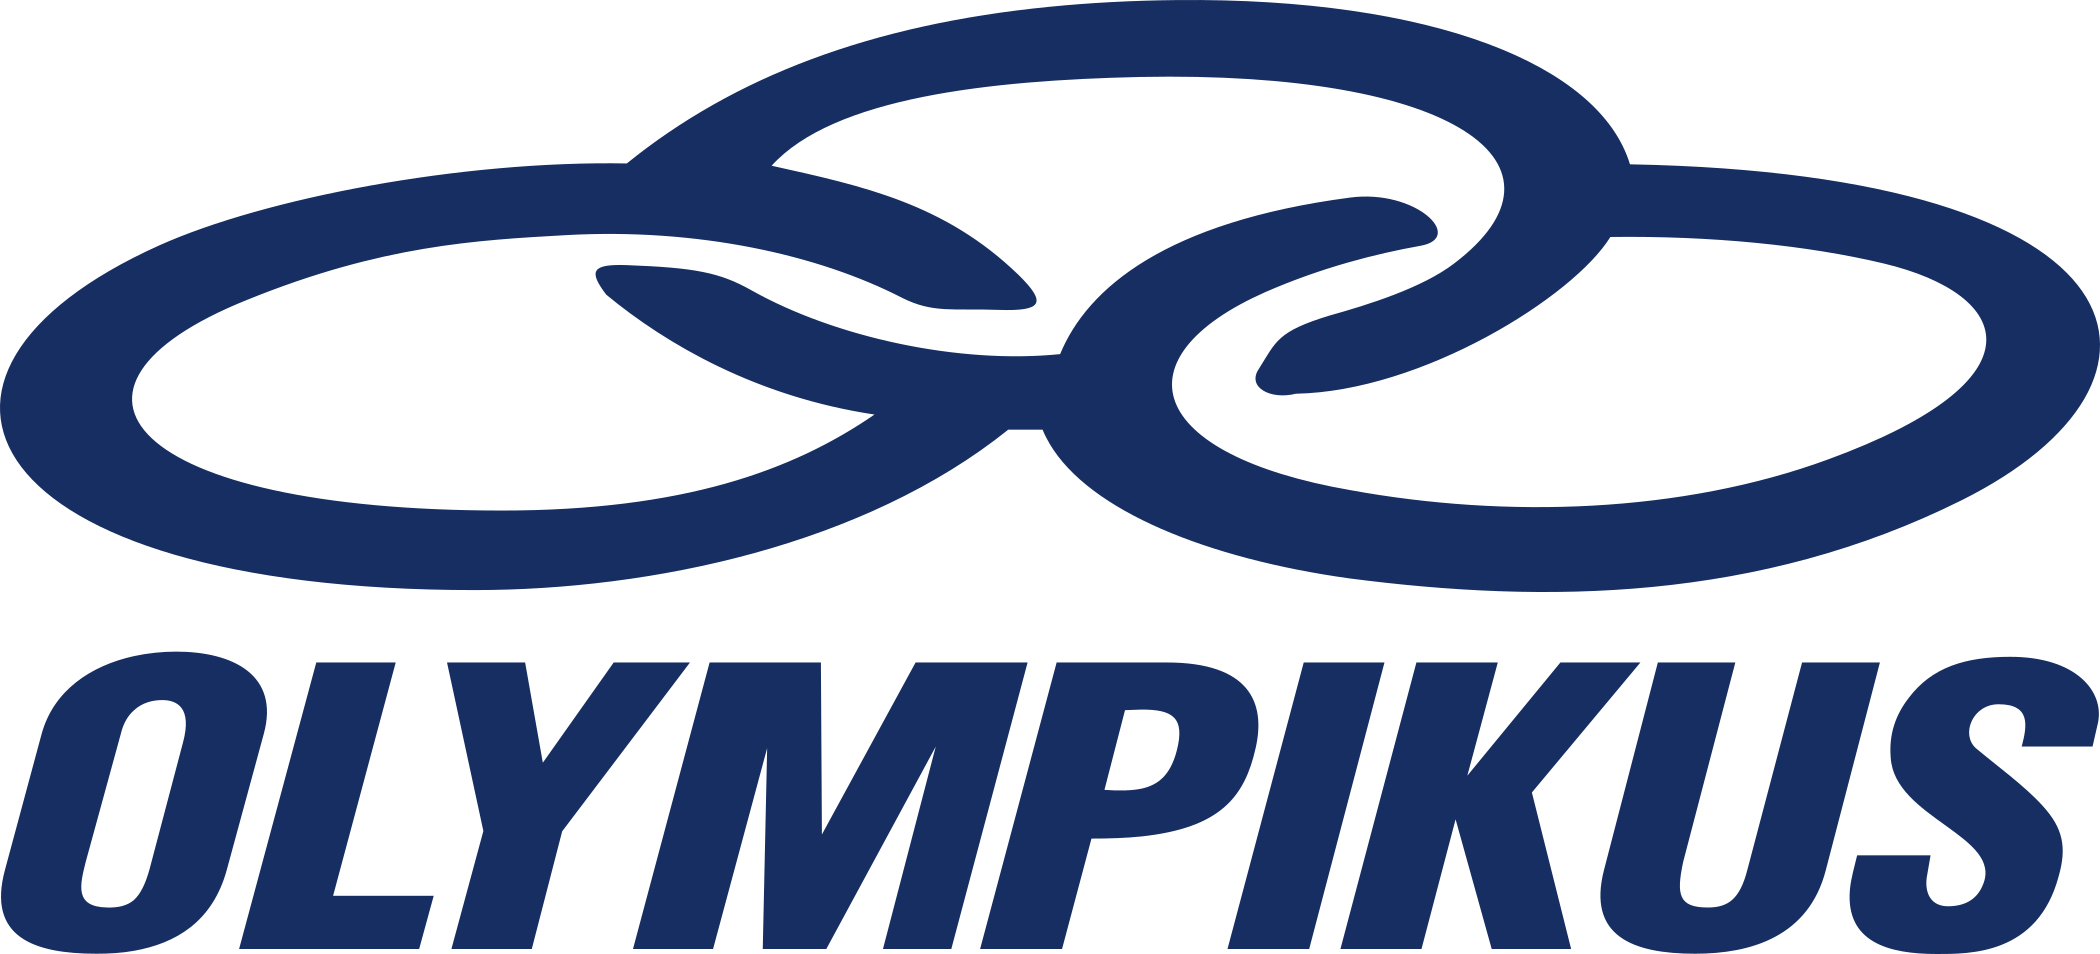 Olympikus logo.